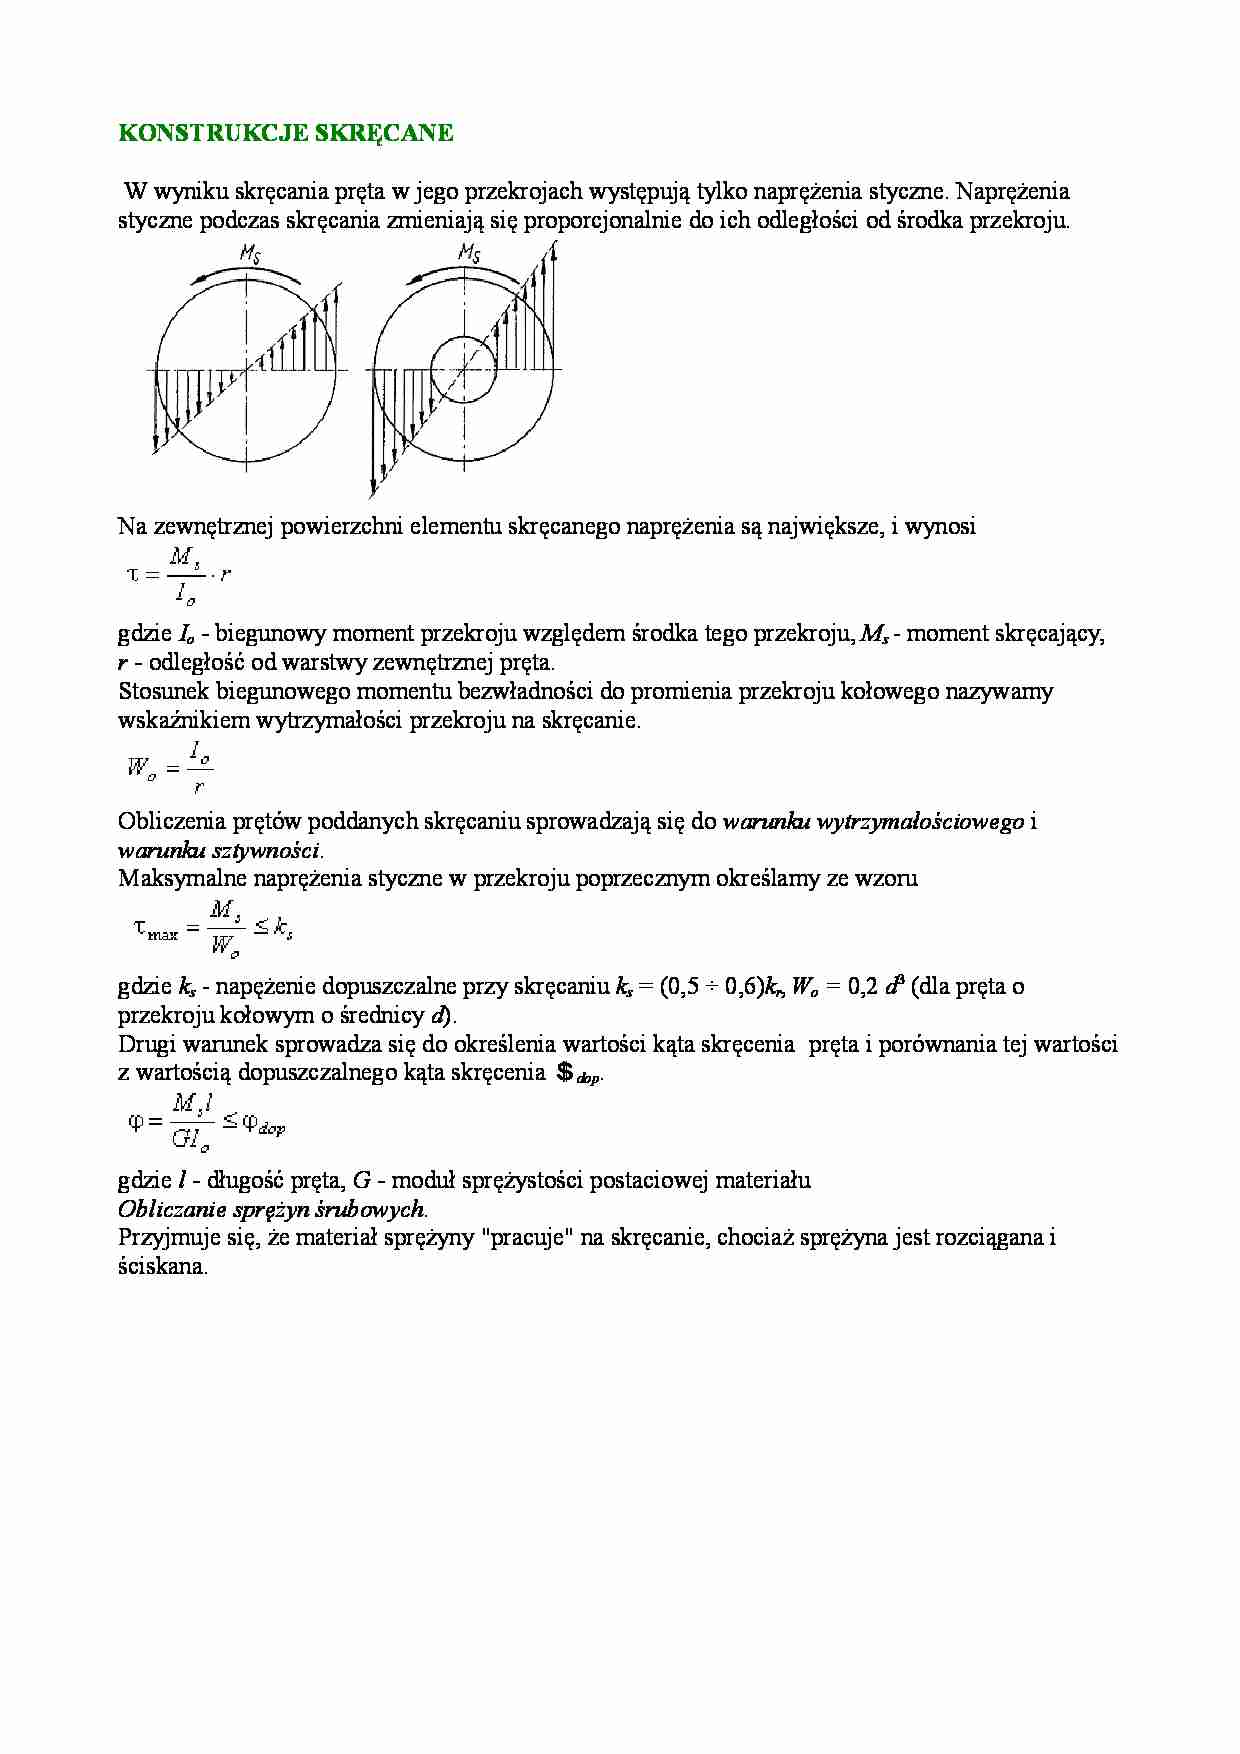 Mechanika techniczna - konstrukcje skręcane - strona 1